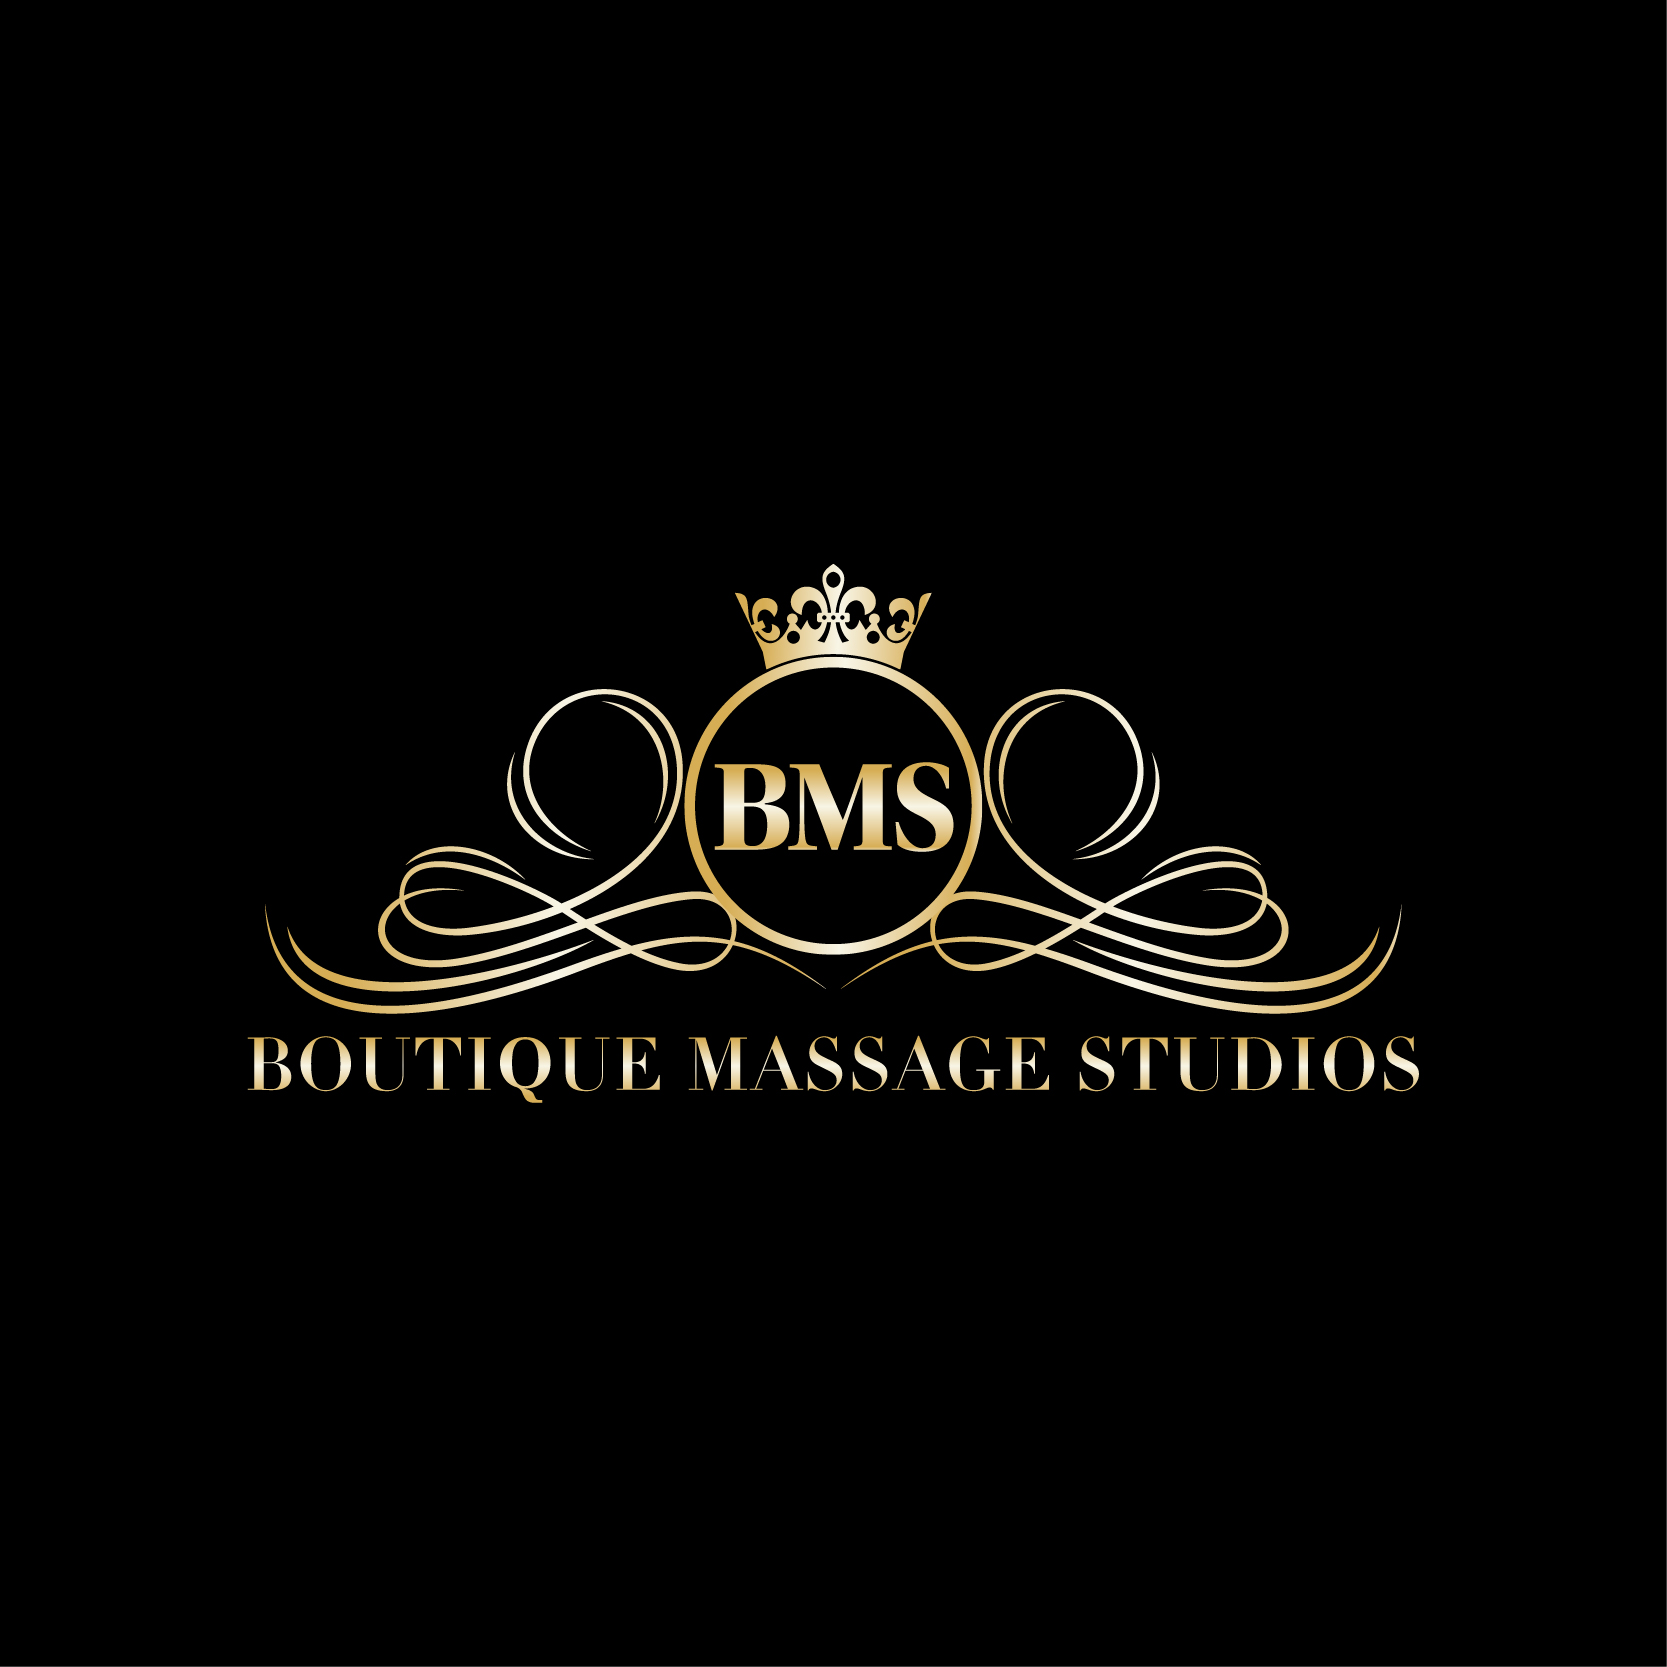 BOOK NOW - Boutique Massage Studios